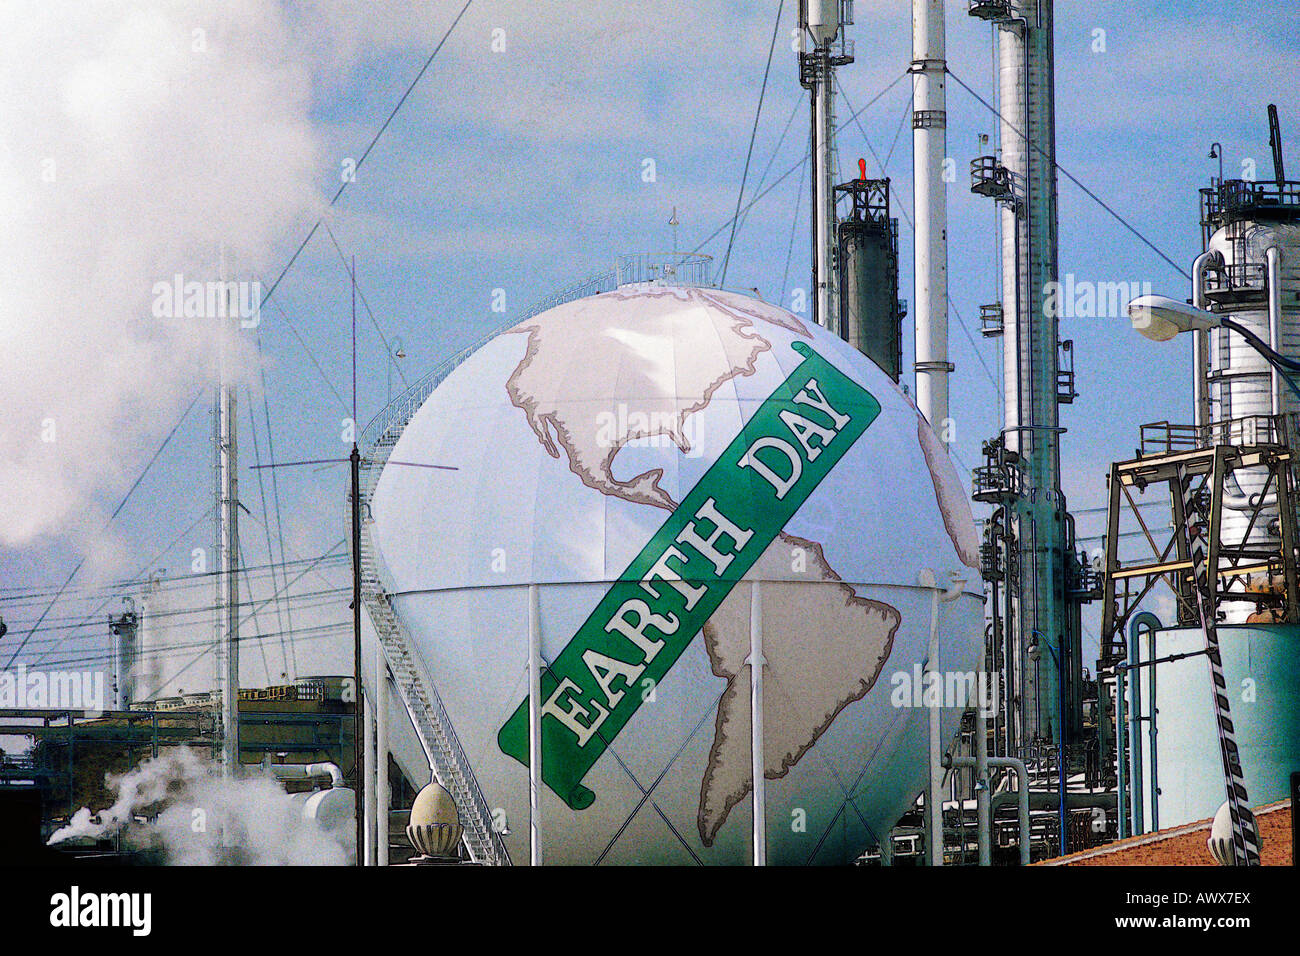 Ver alterada digitalmente de un tanque pintado como un globo con las palabras "Día de la tierra" en una refinería petrolera Unocal en Los Angeles, CA Foto de stock